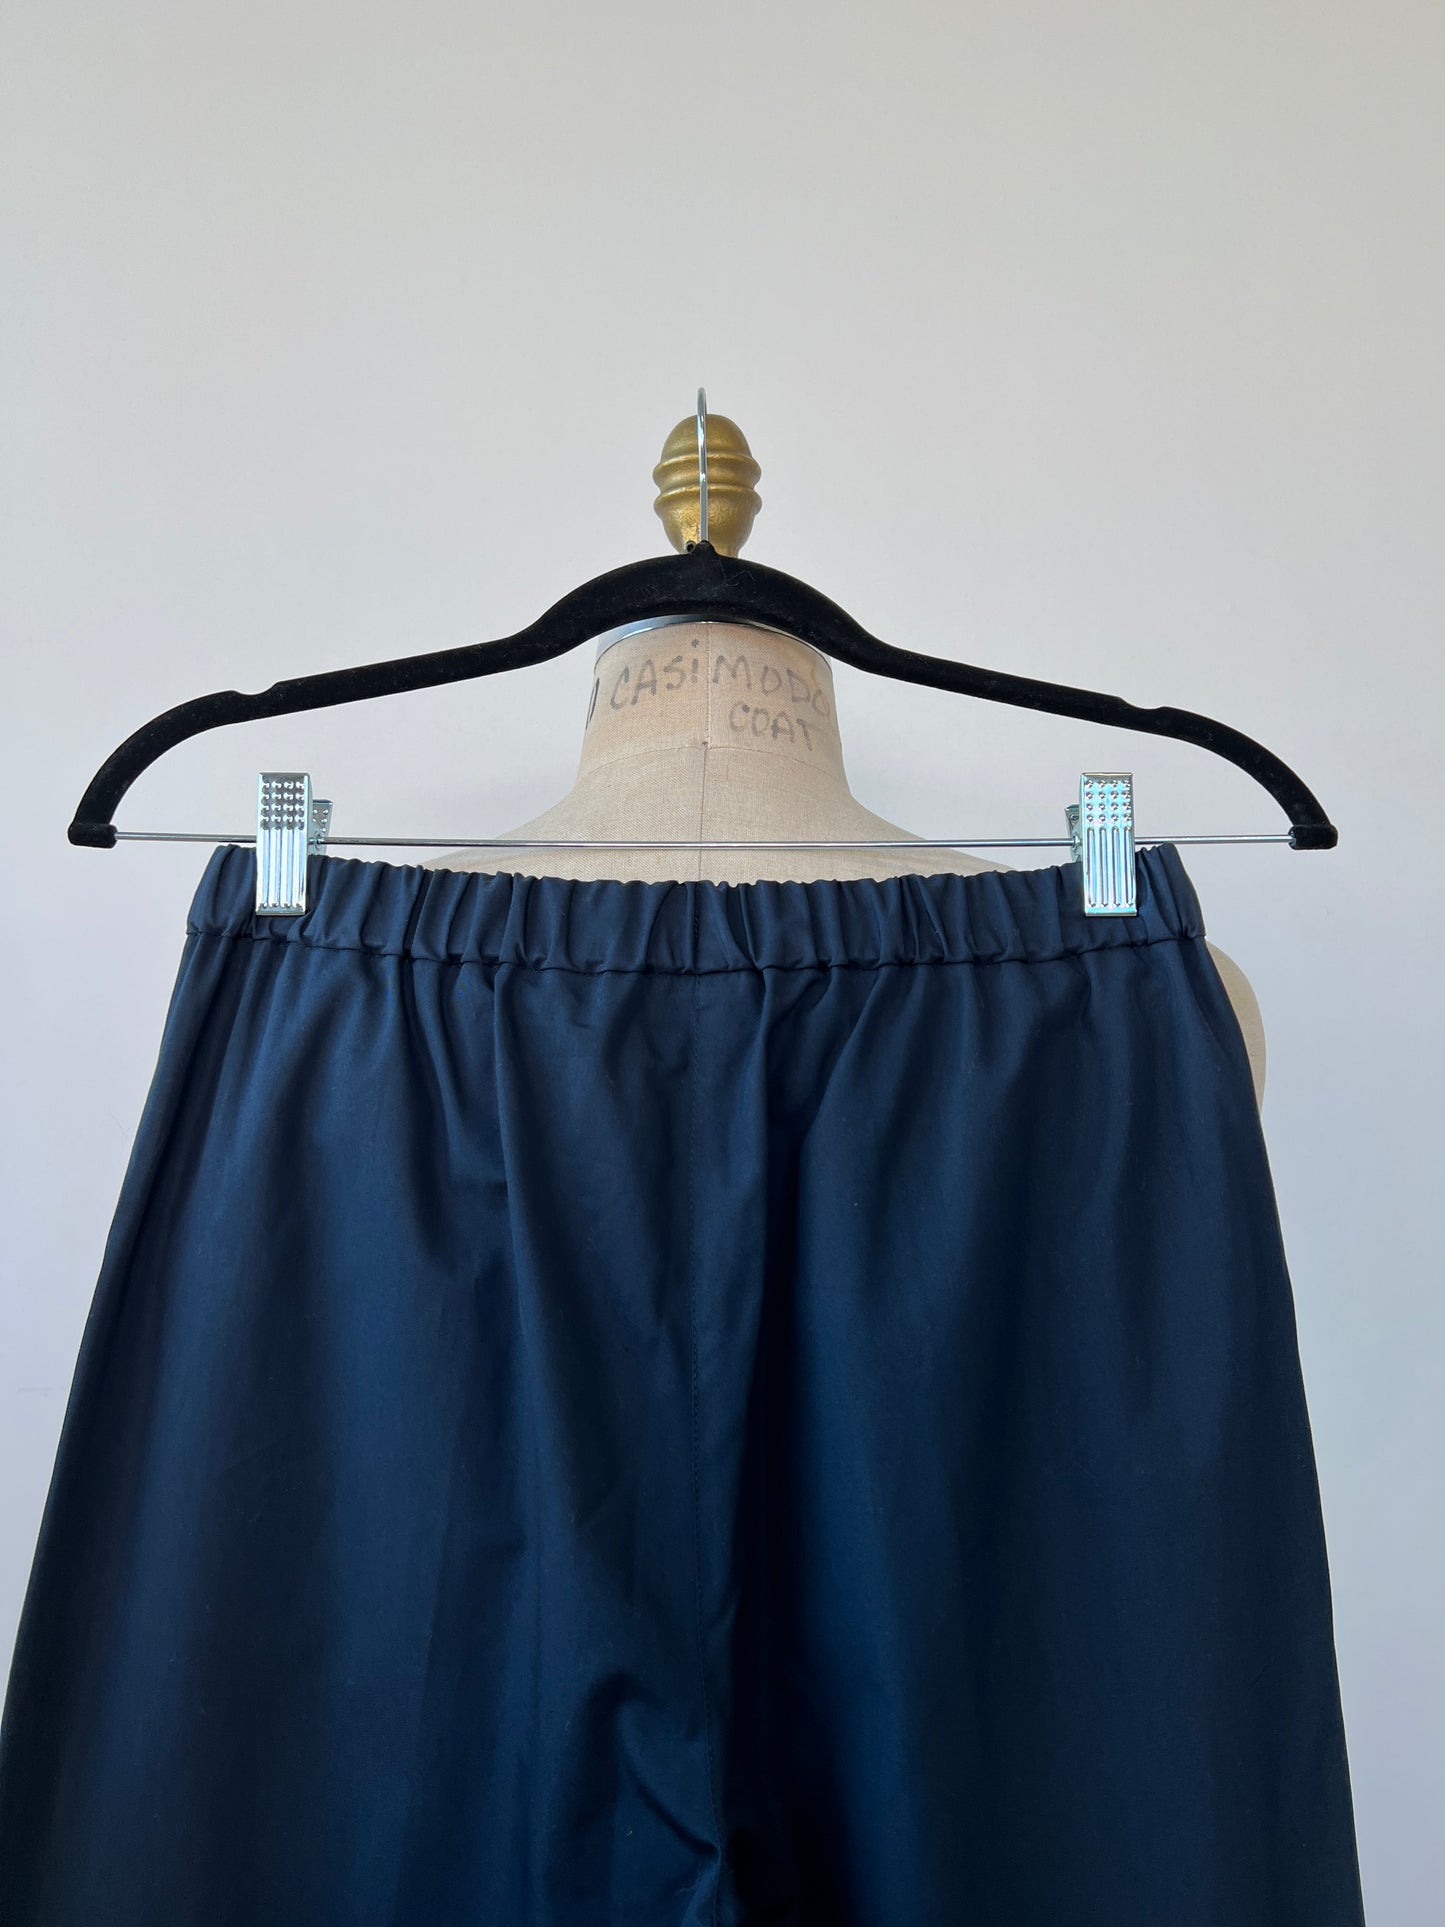 Pantalon marine ample à coupe droite lavable (XS)